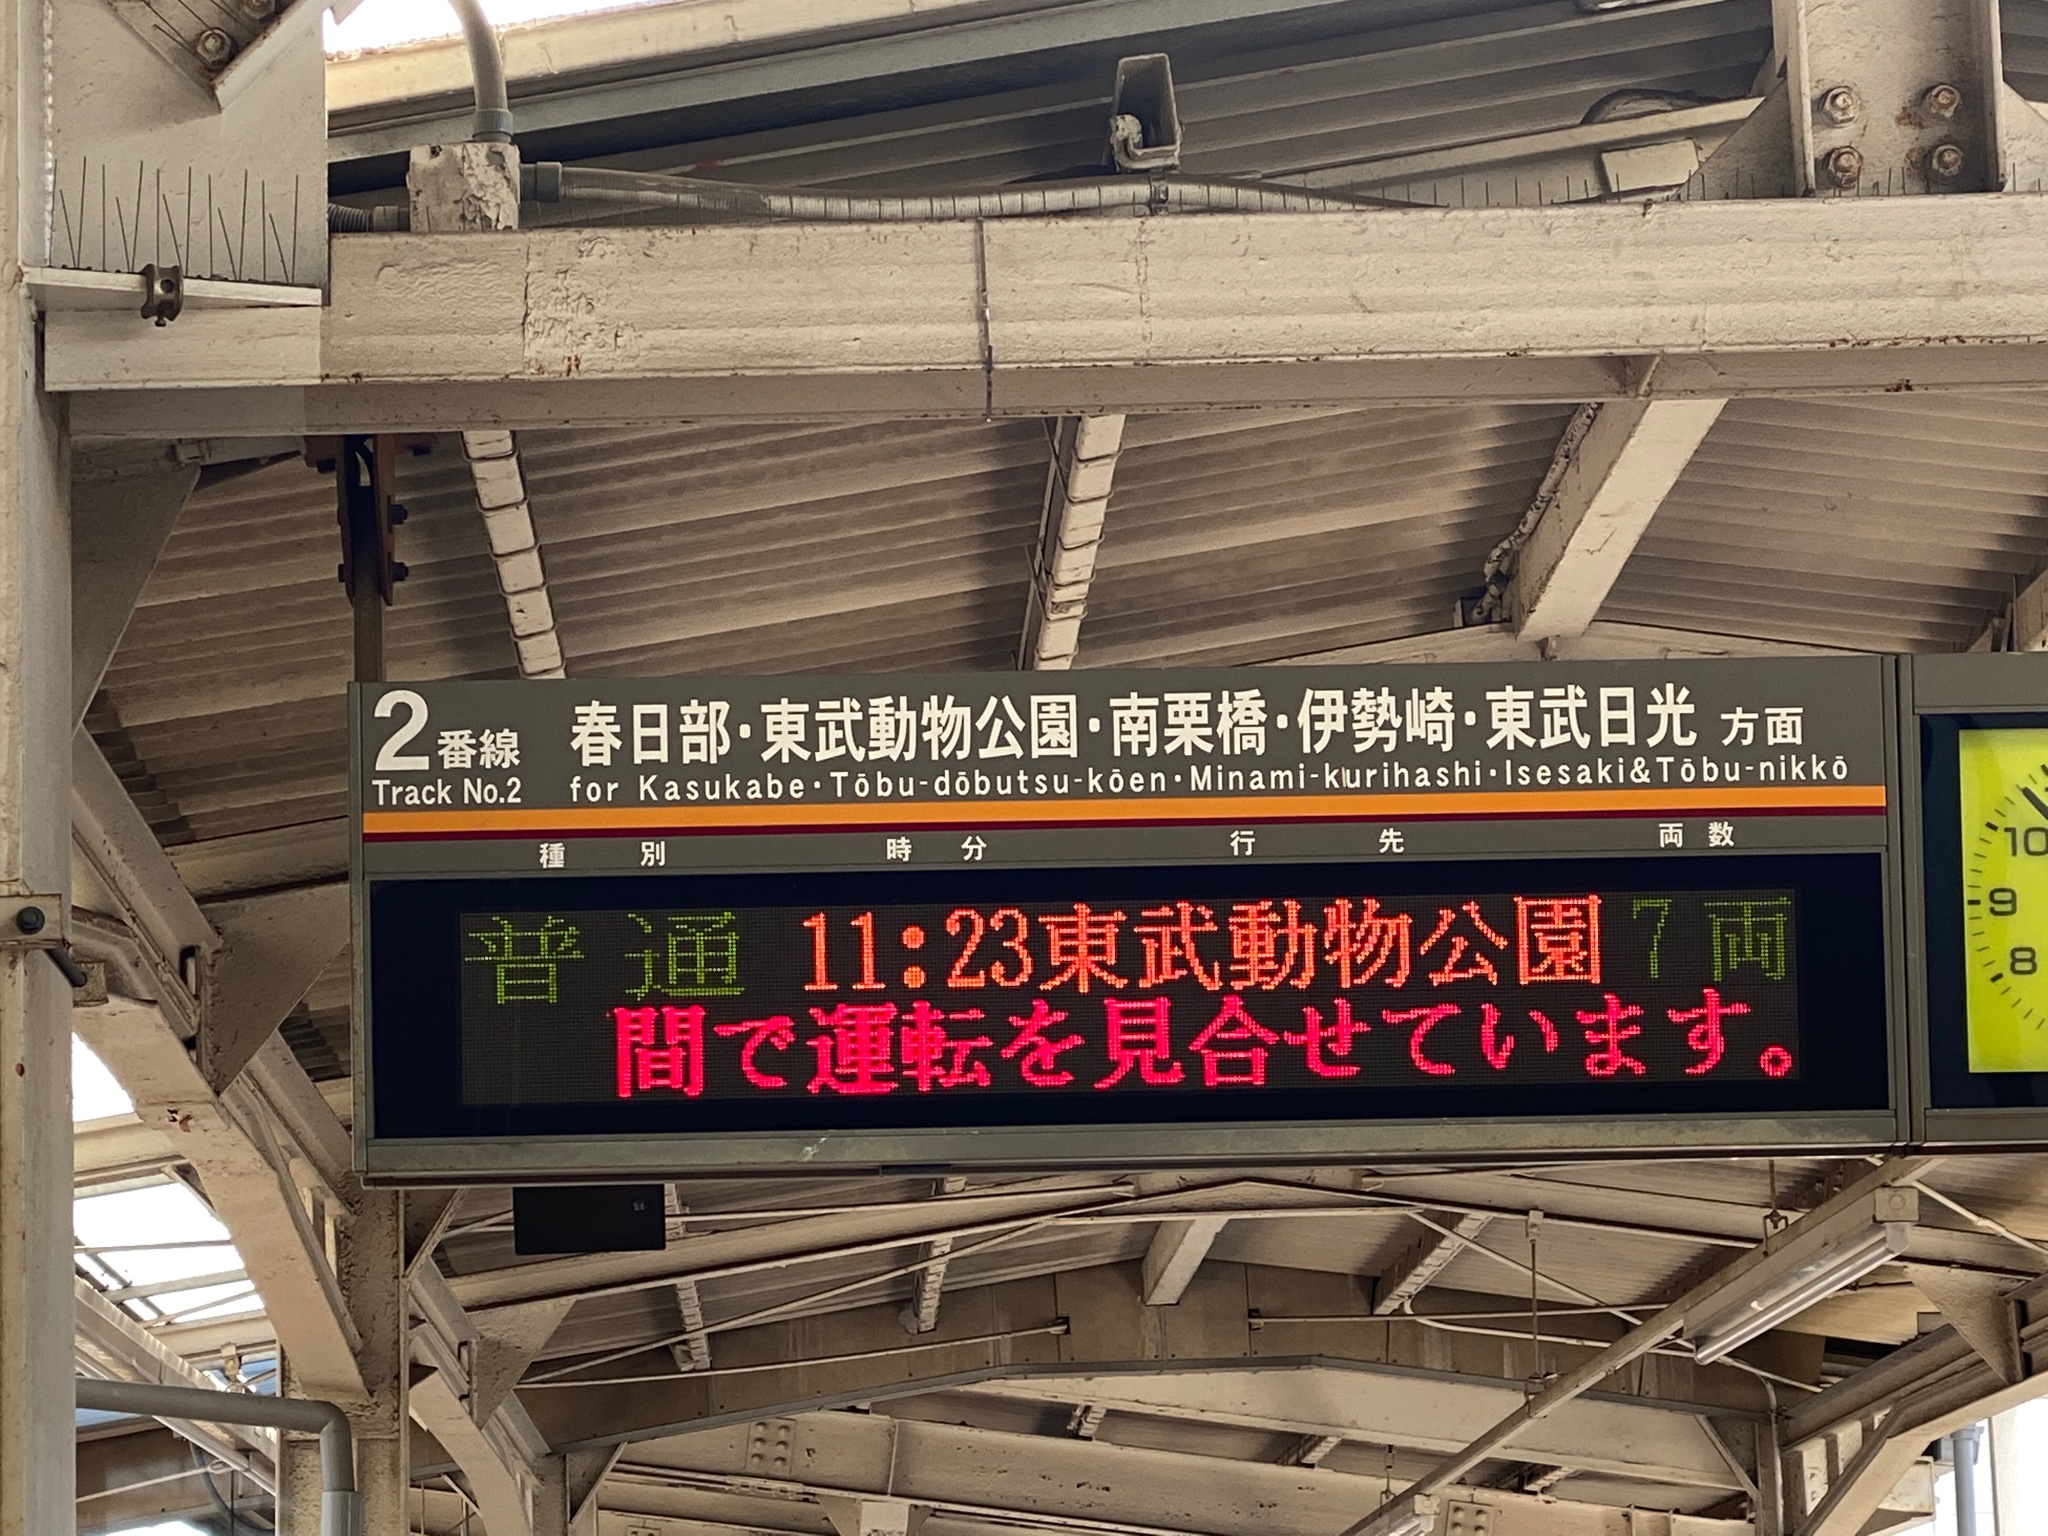 画像 武里駅来たが 姫宮駅で人身事故あったらしく 電車止まってます 東武スカイツリーライン T Co 81vlzdqf10 Matomehub まとめハブ